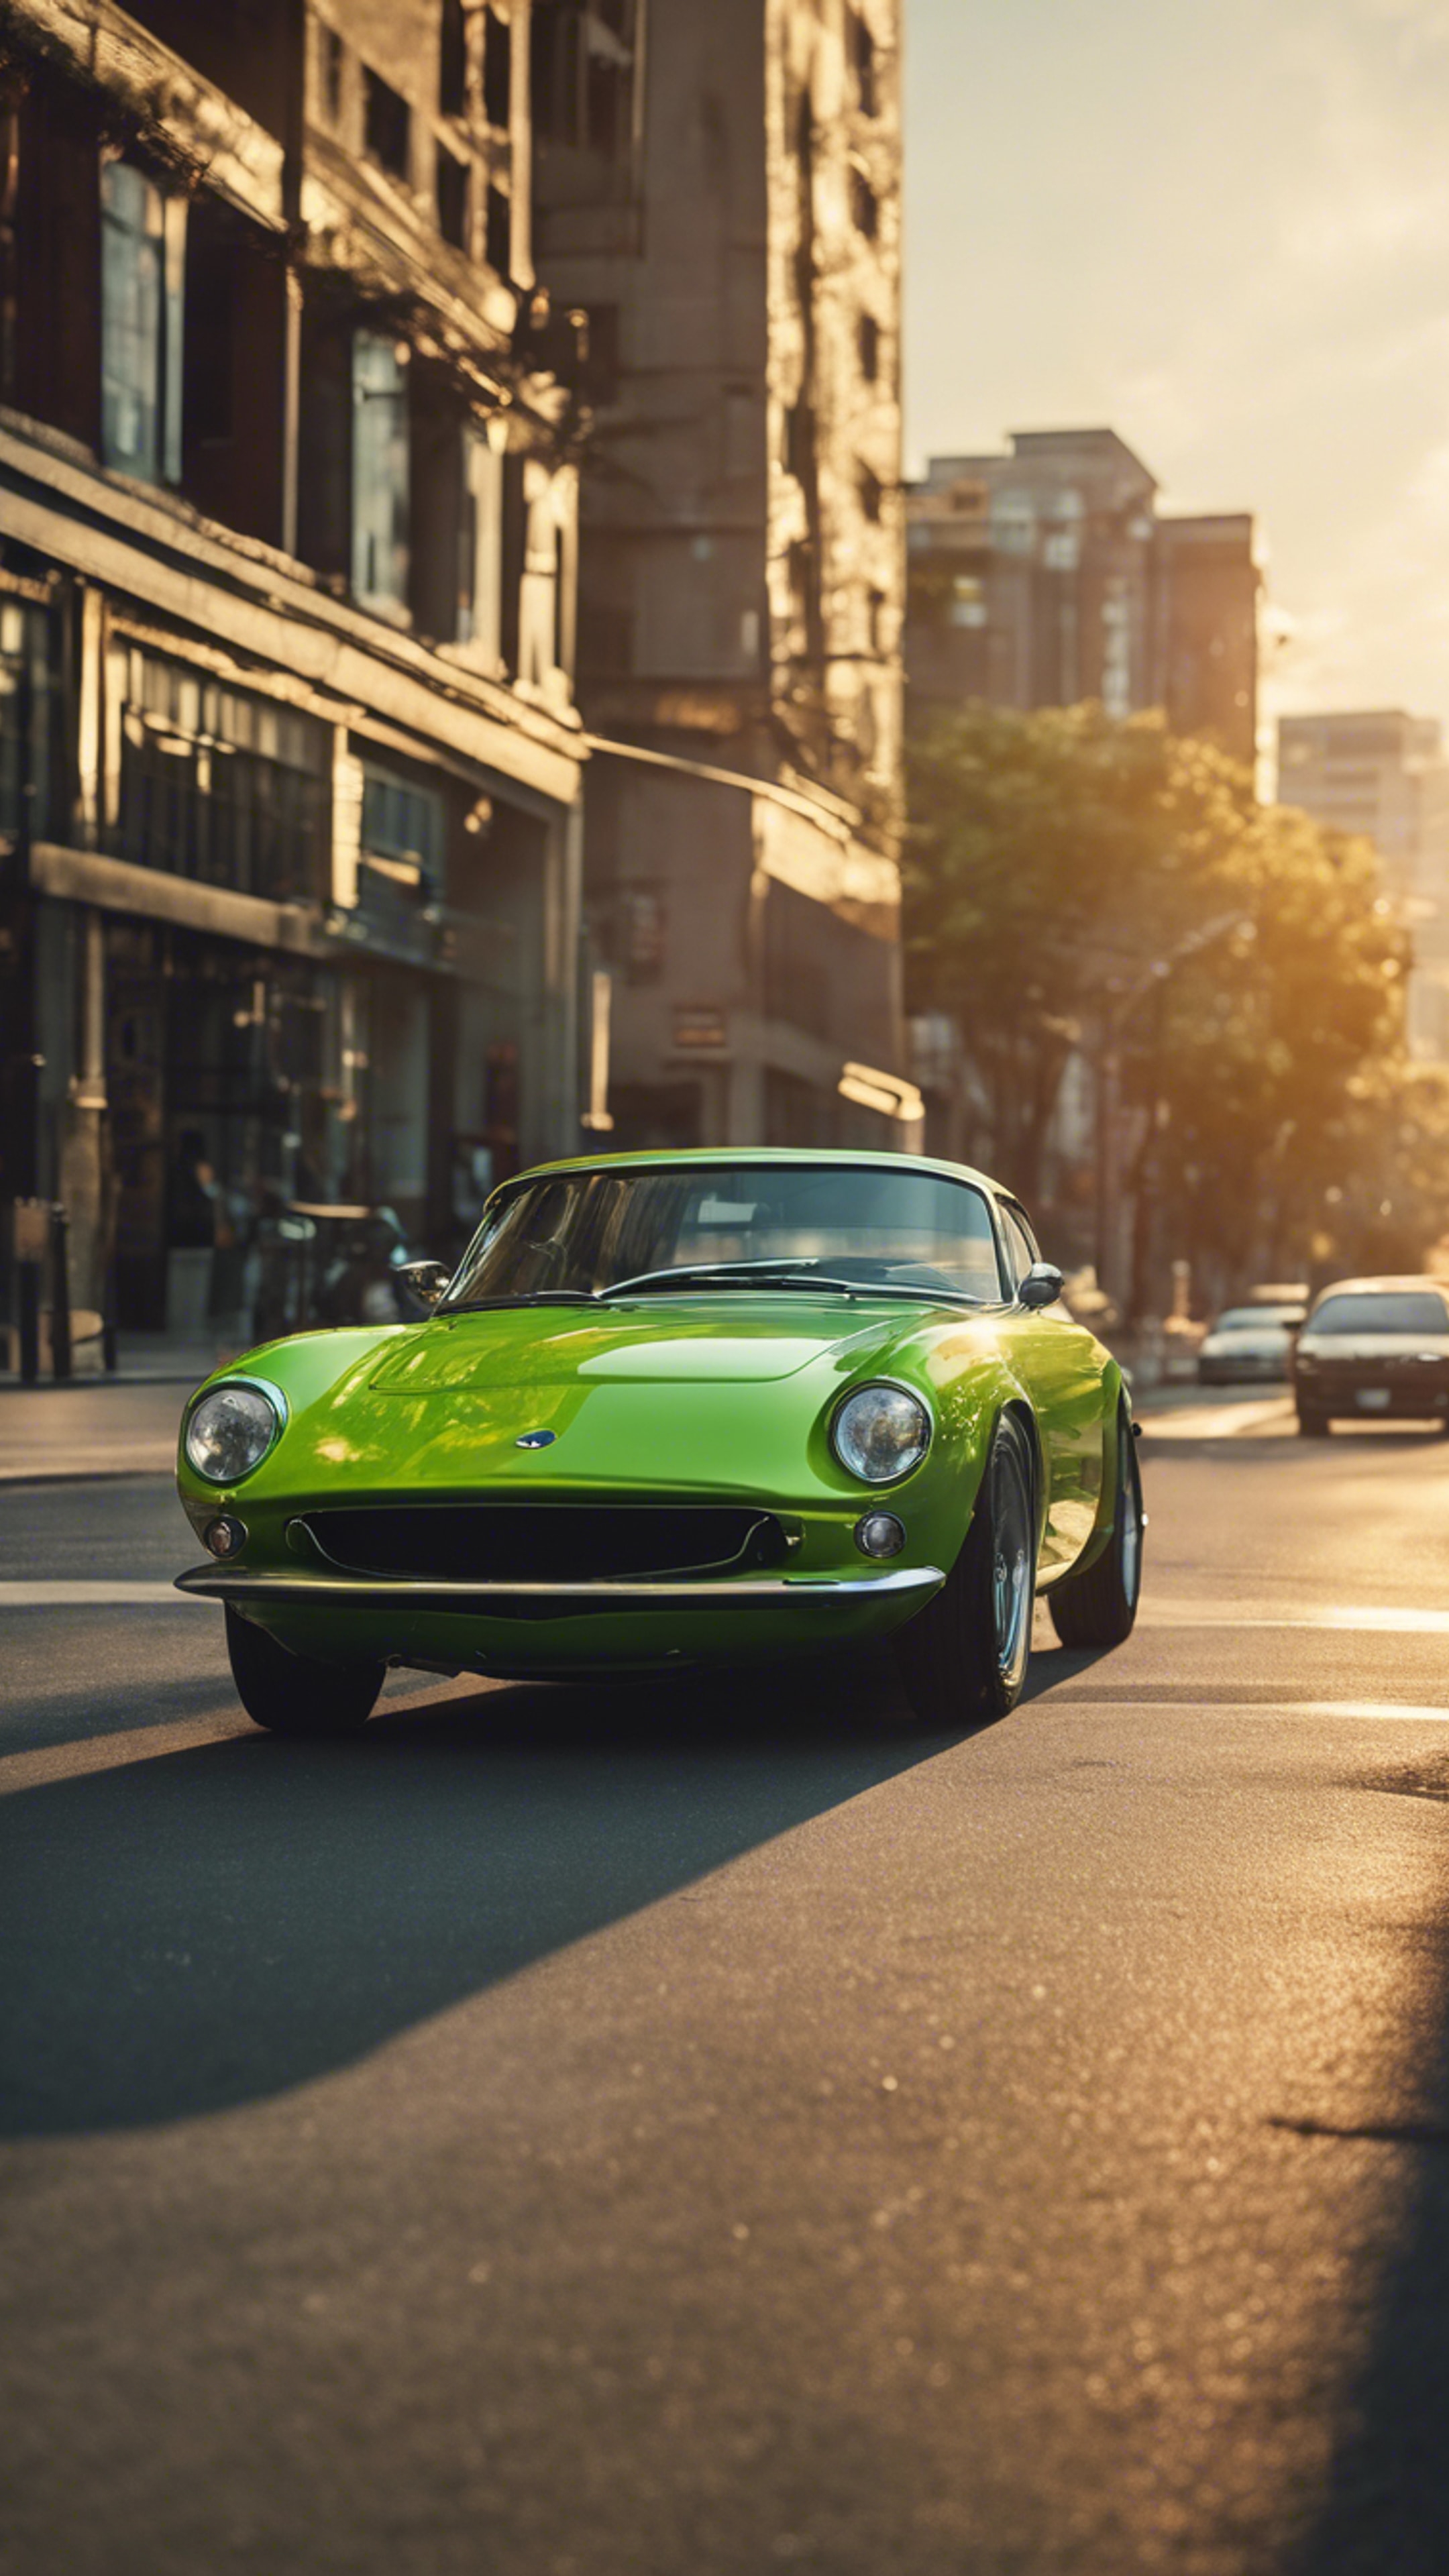 A lime green sports car speeding down a city street at sunset. Wallpaper[650ecab6c10046e0a1d5]